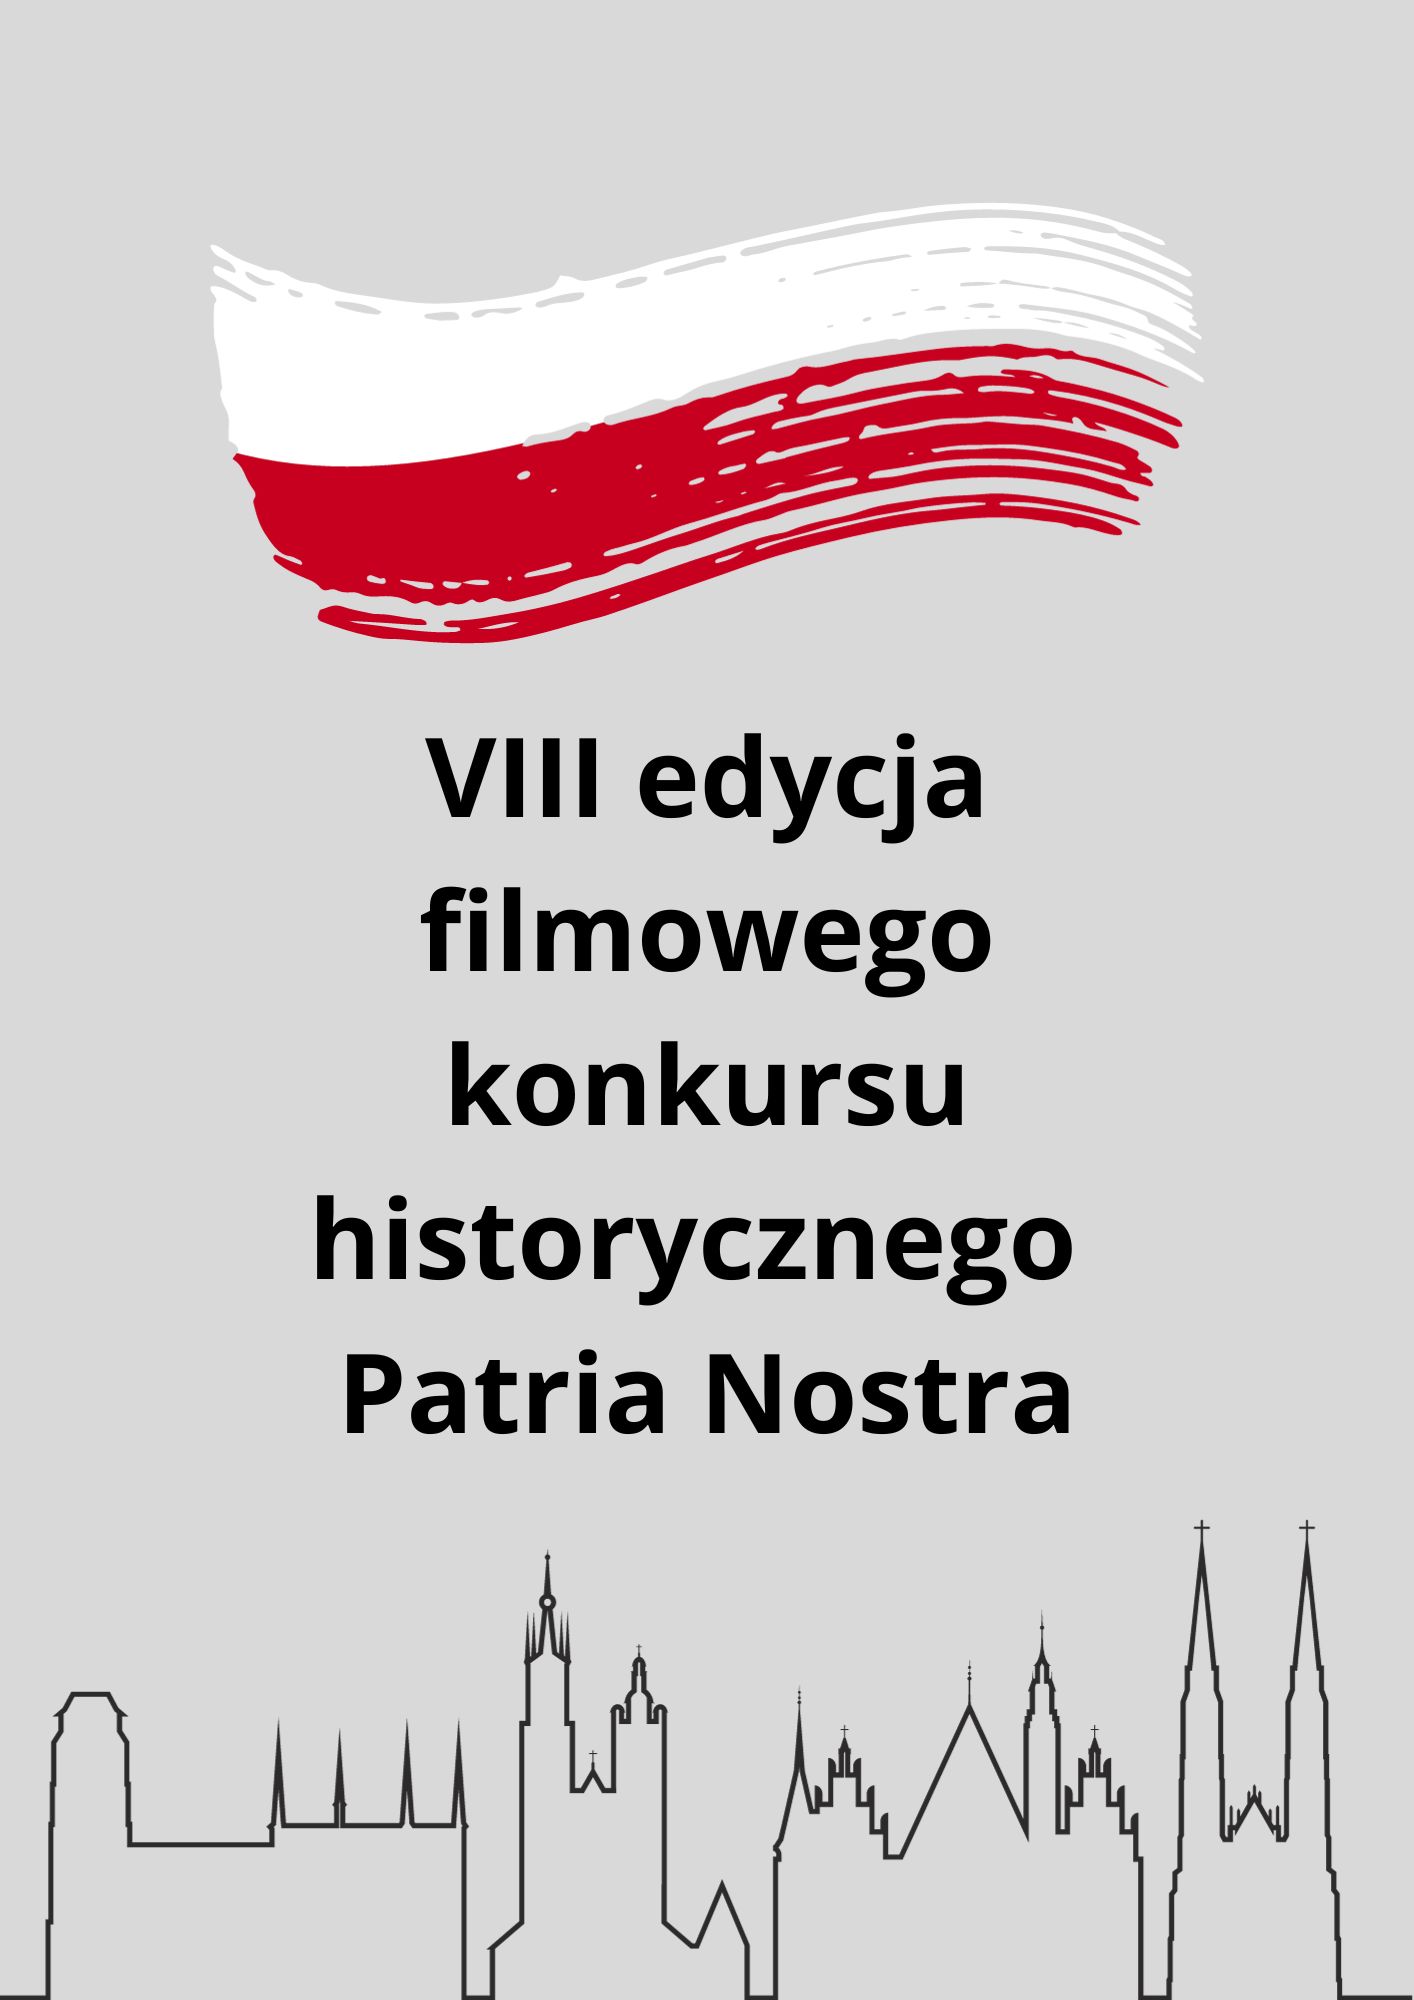 VIII edycja filmowego konkursu historycznego Patria Nostra